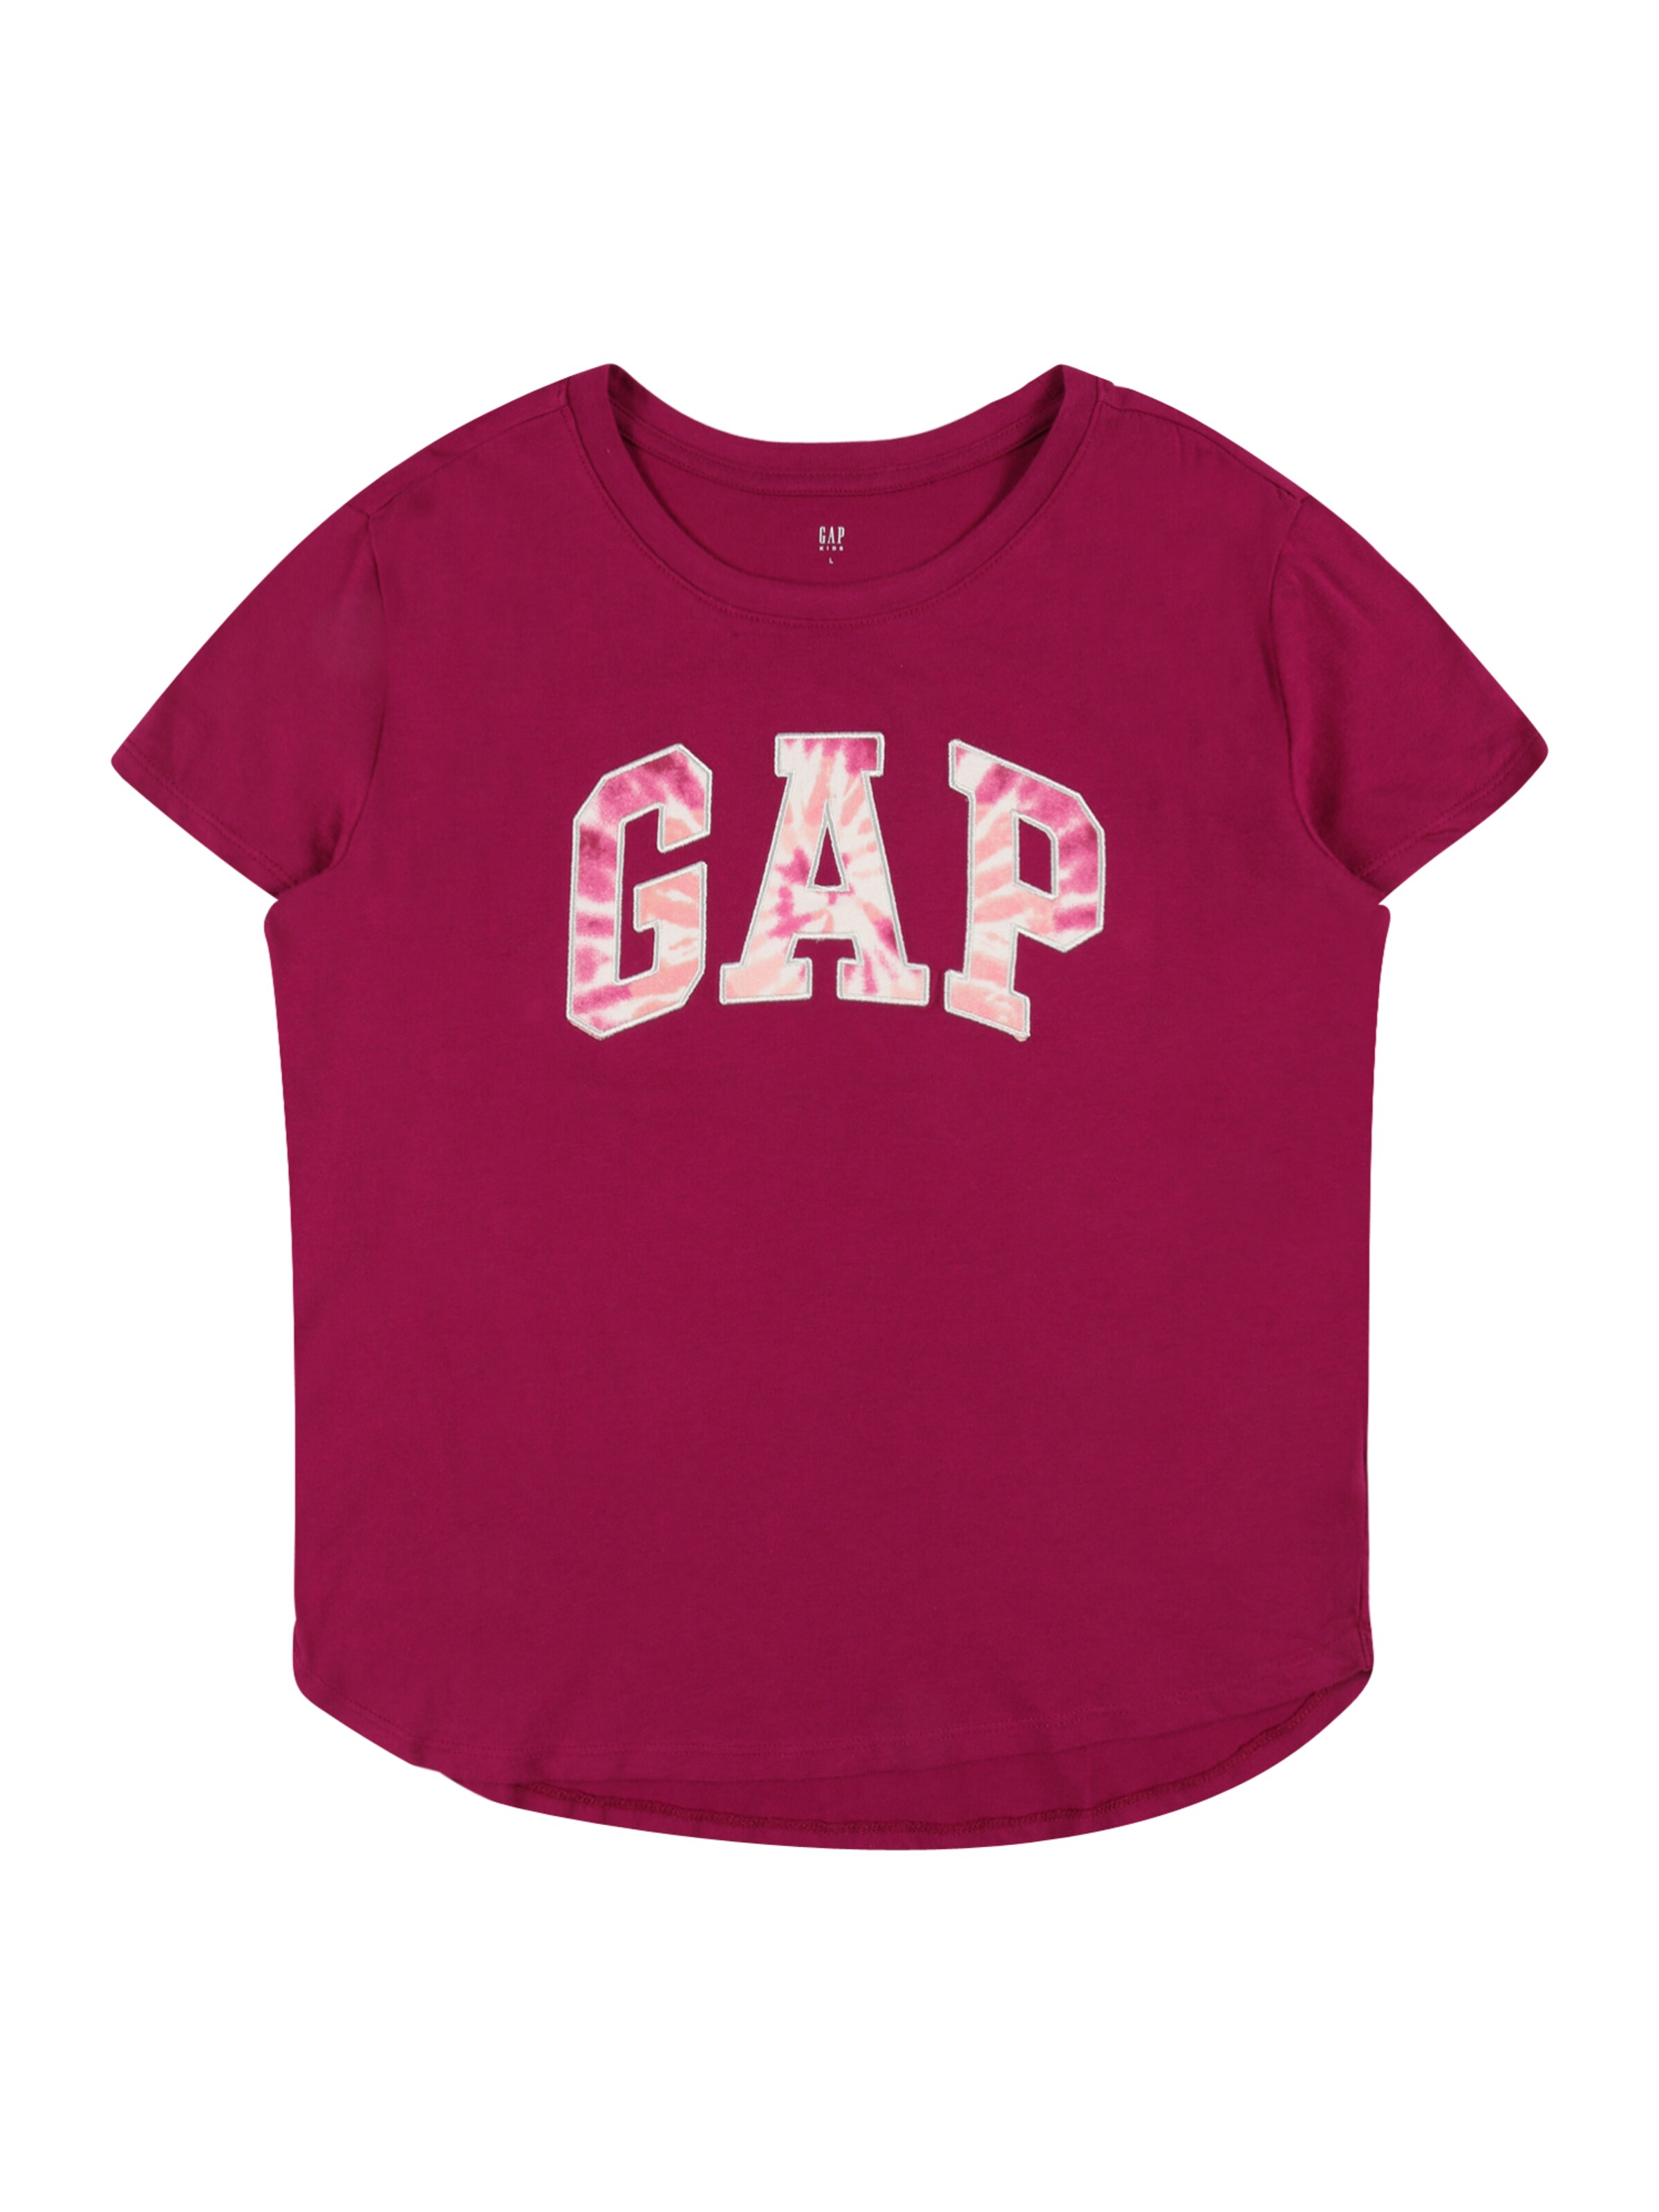 Tops T-Shirt GAP 9-10 ans pink Kinder Mädchen Gap Kleidung Gap Kinder Oberteile Gap Kinder Tops T-Shirts Gap Kinder Tops T-Shirts Gap Kinder 